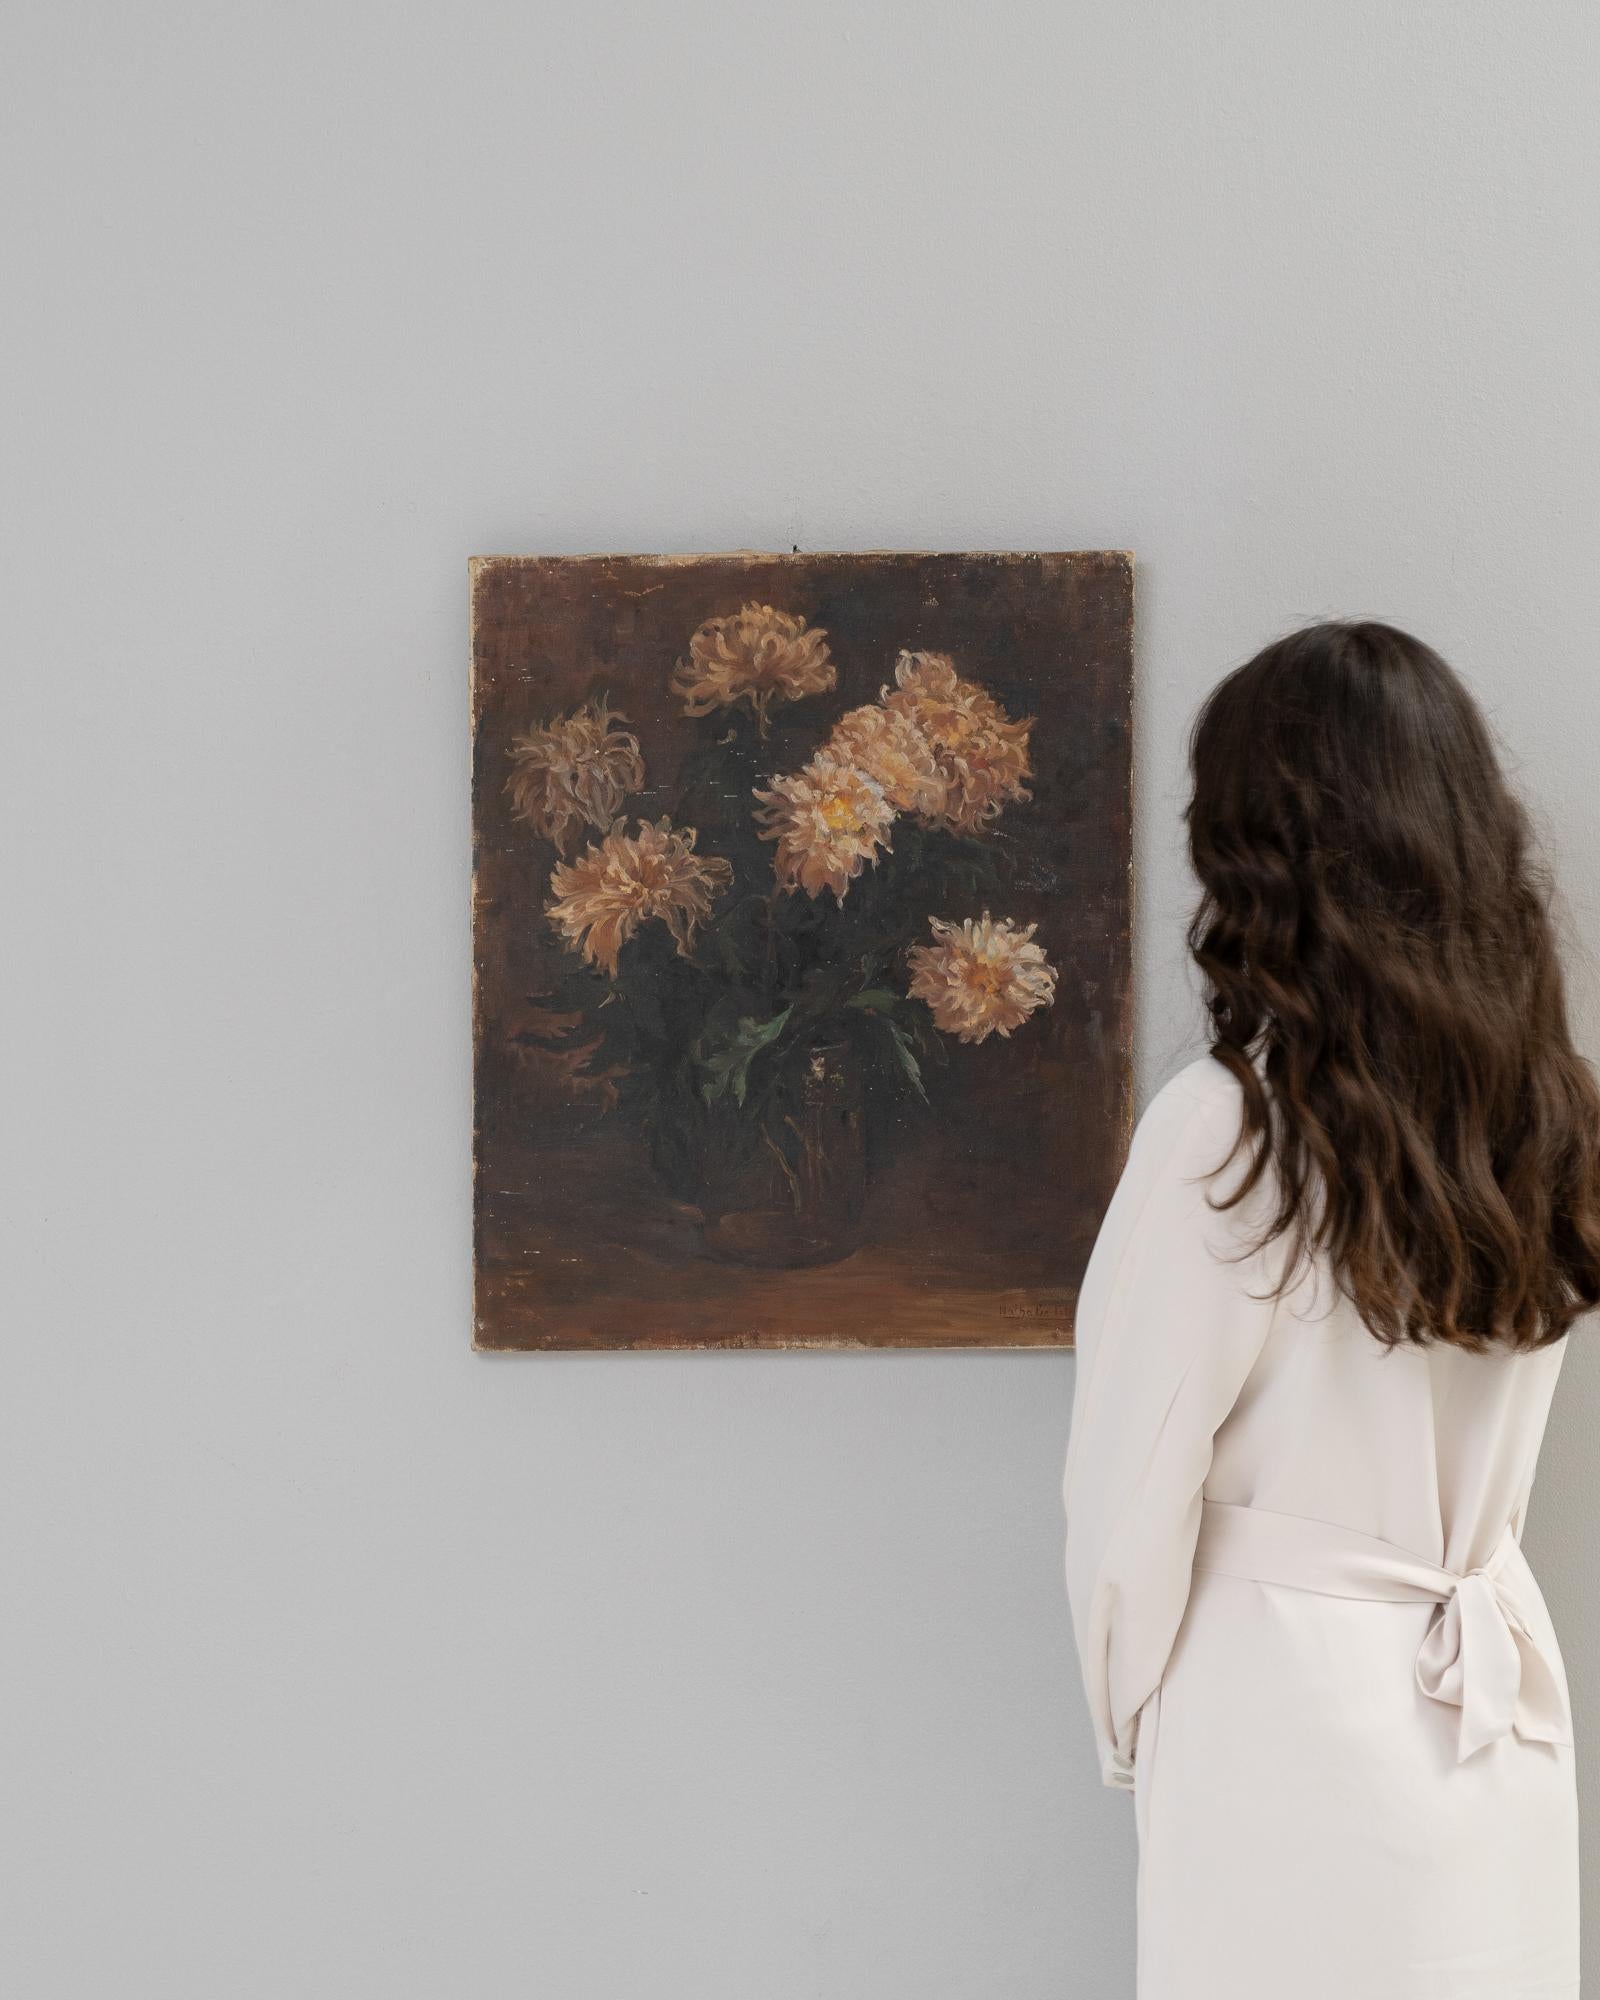 Cette peinture belge du XXe siècle représente un bouquet de chrysanthèmes en pleine floraison, dont les pétales forment une symphonie de teintes dorées et ambrées qui donnent de la chaleur à la toile. L'arrière-plan sombre contraste fortement avec